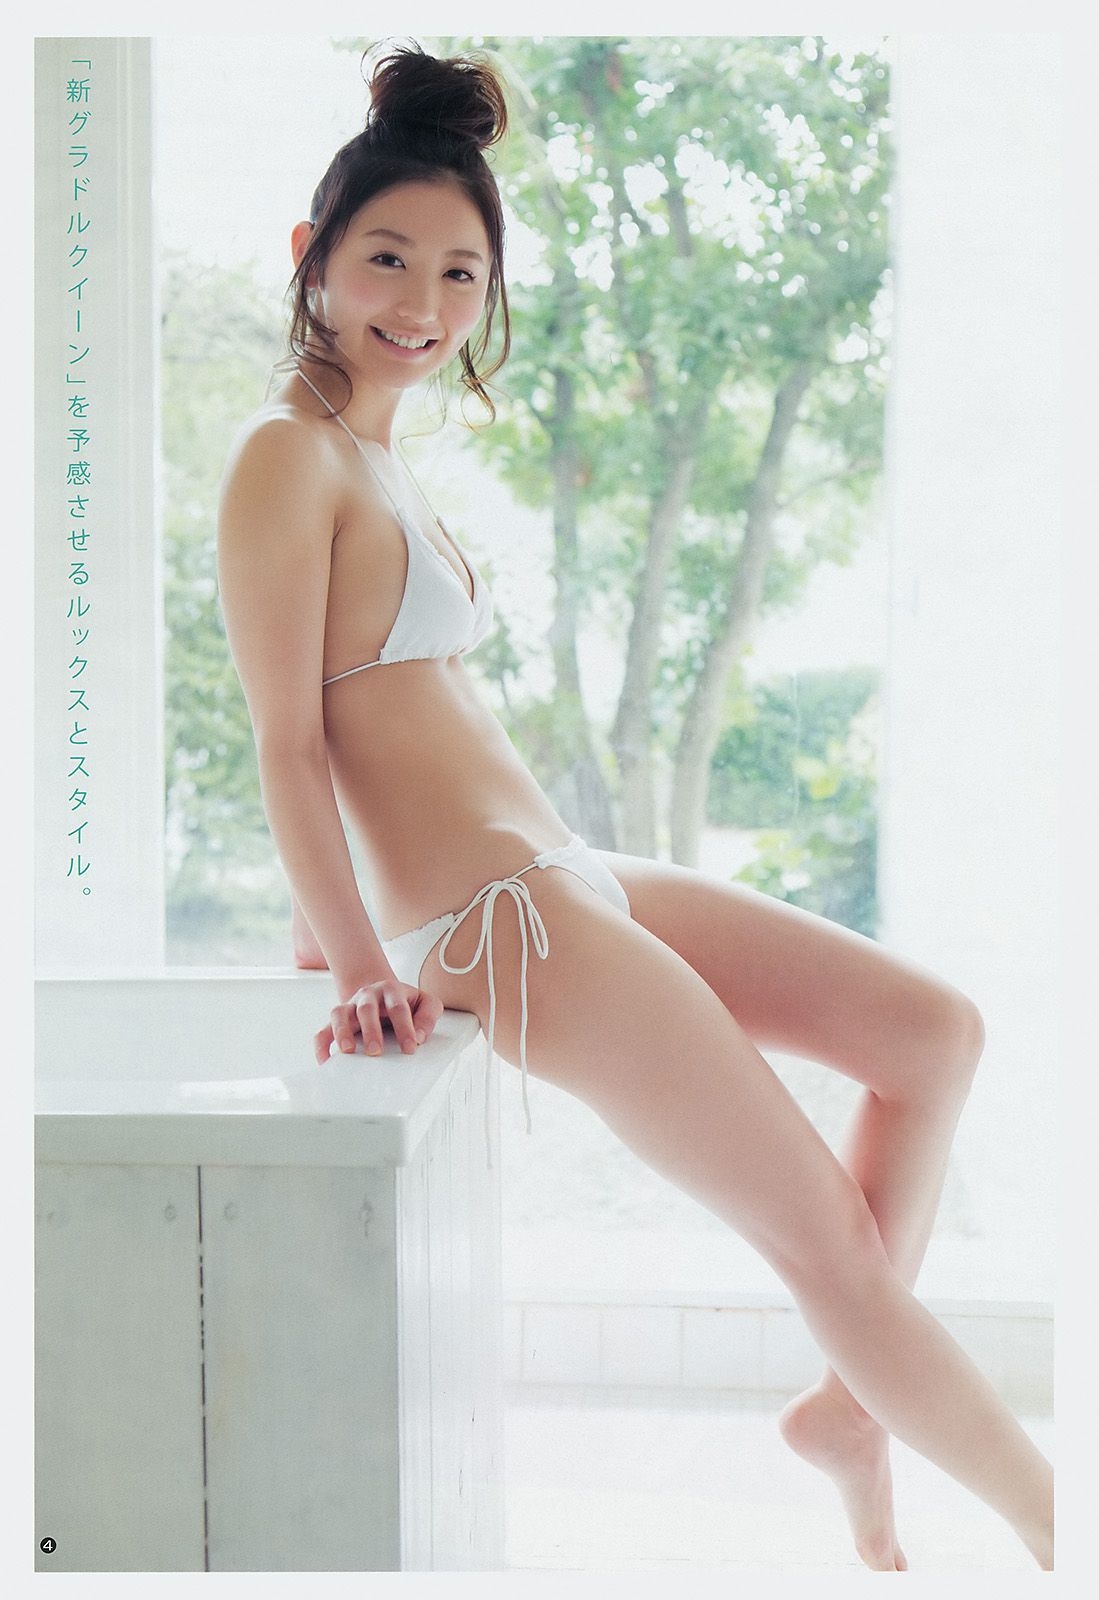 おのののか 志田友美 [Weekly Young Jump] 2014年No.12 写真杂志 